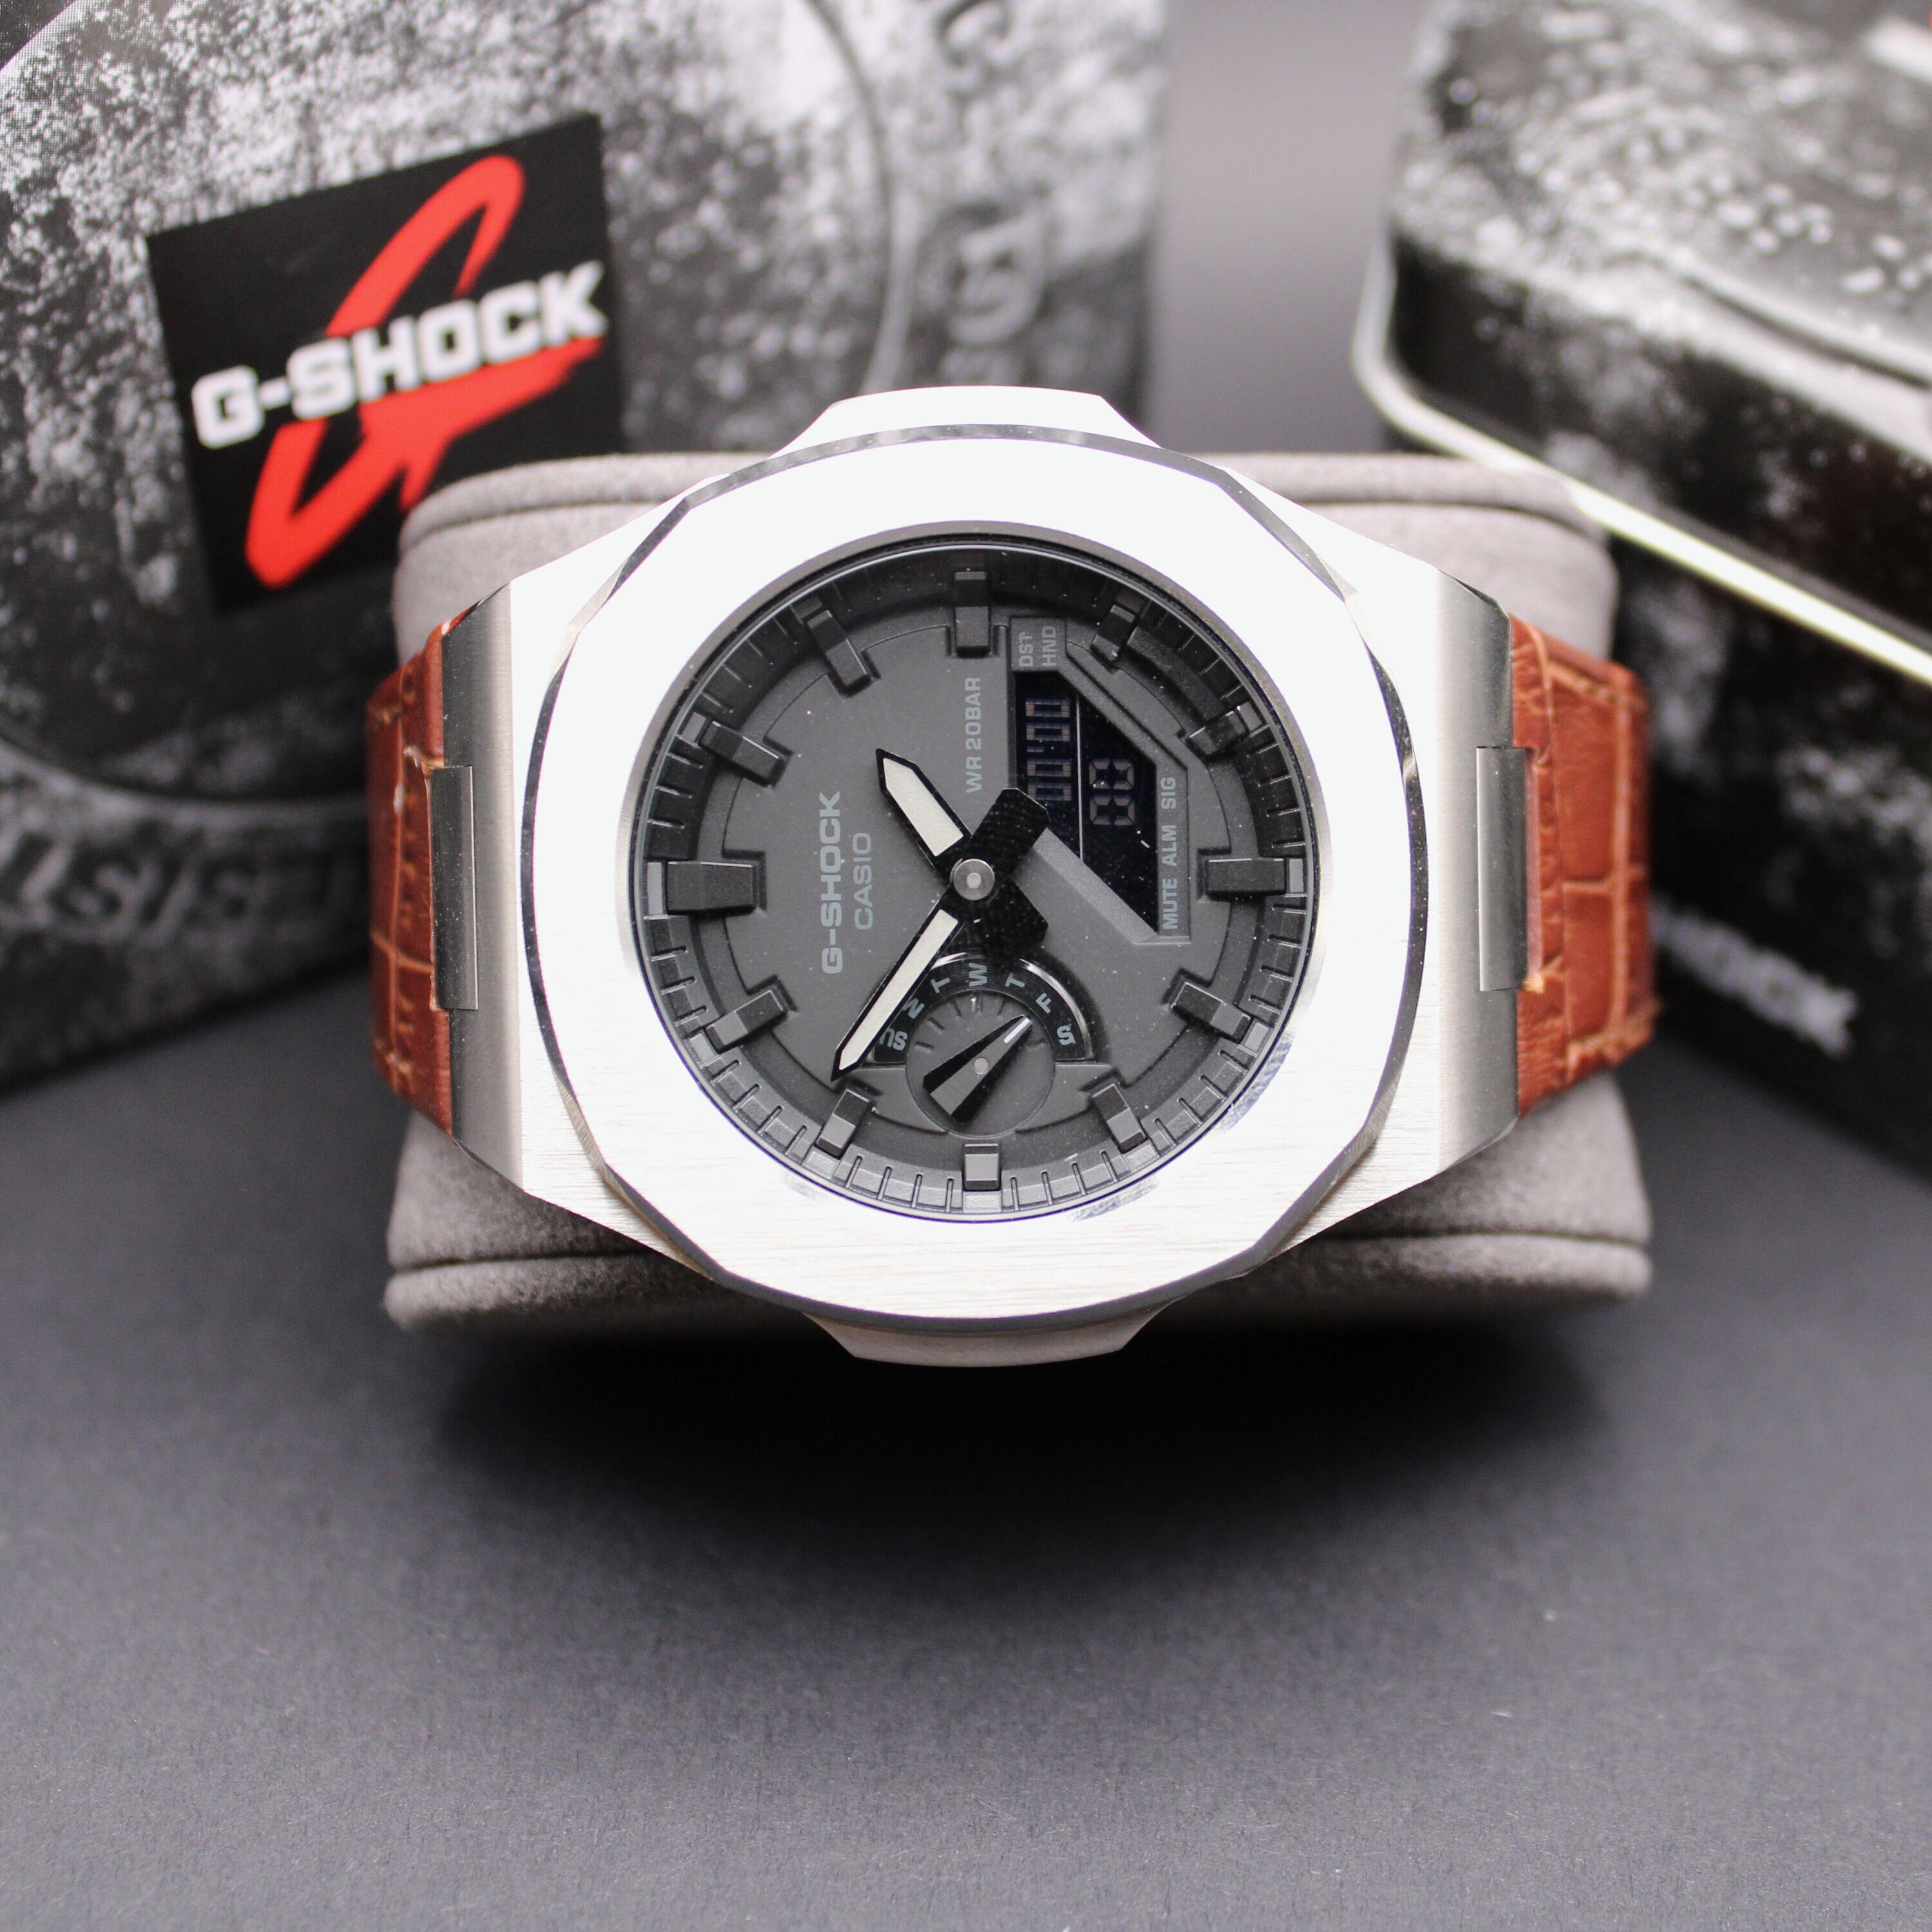 Reloj Casio G-SHOCK Reloj Analógico-Digital, 20 BAR, para Hombre  GA-2100-1A3ER - Joyería Iris